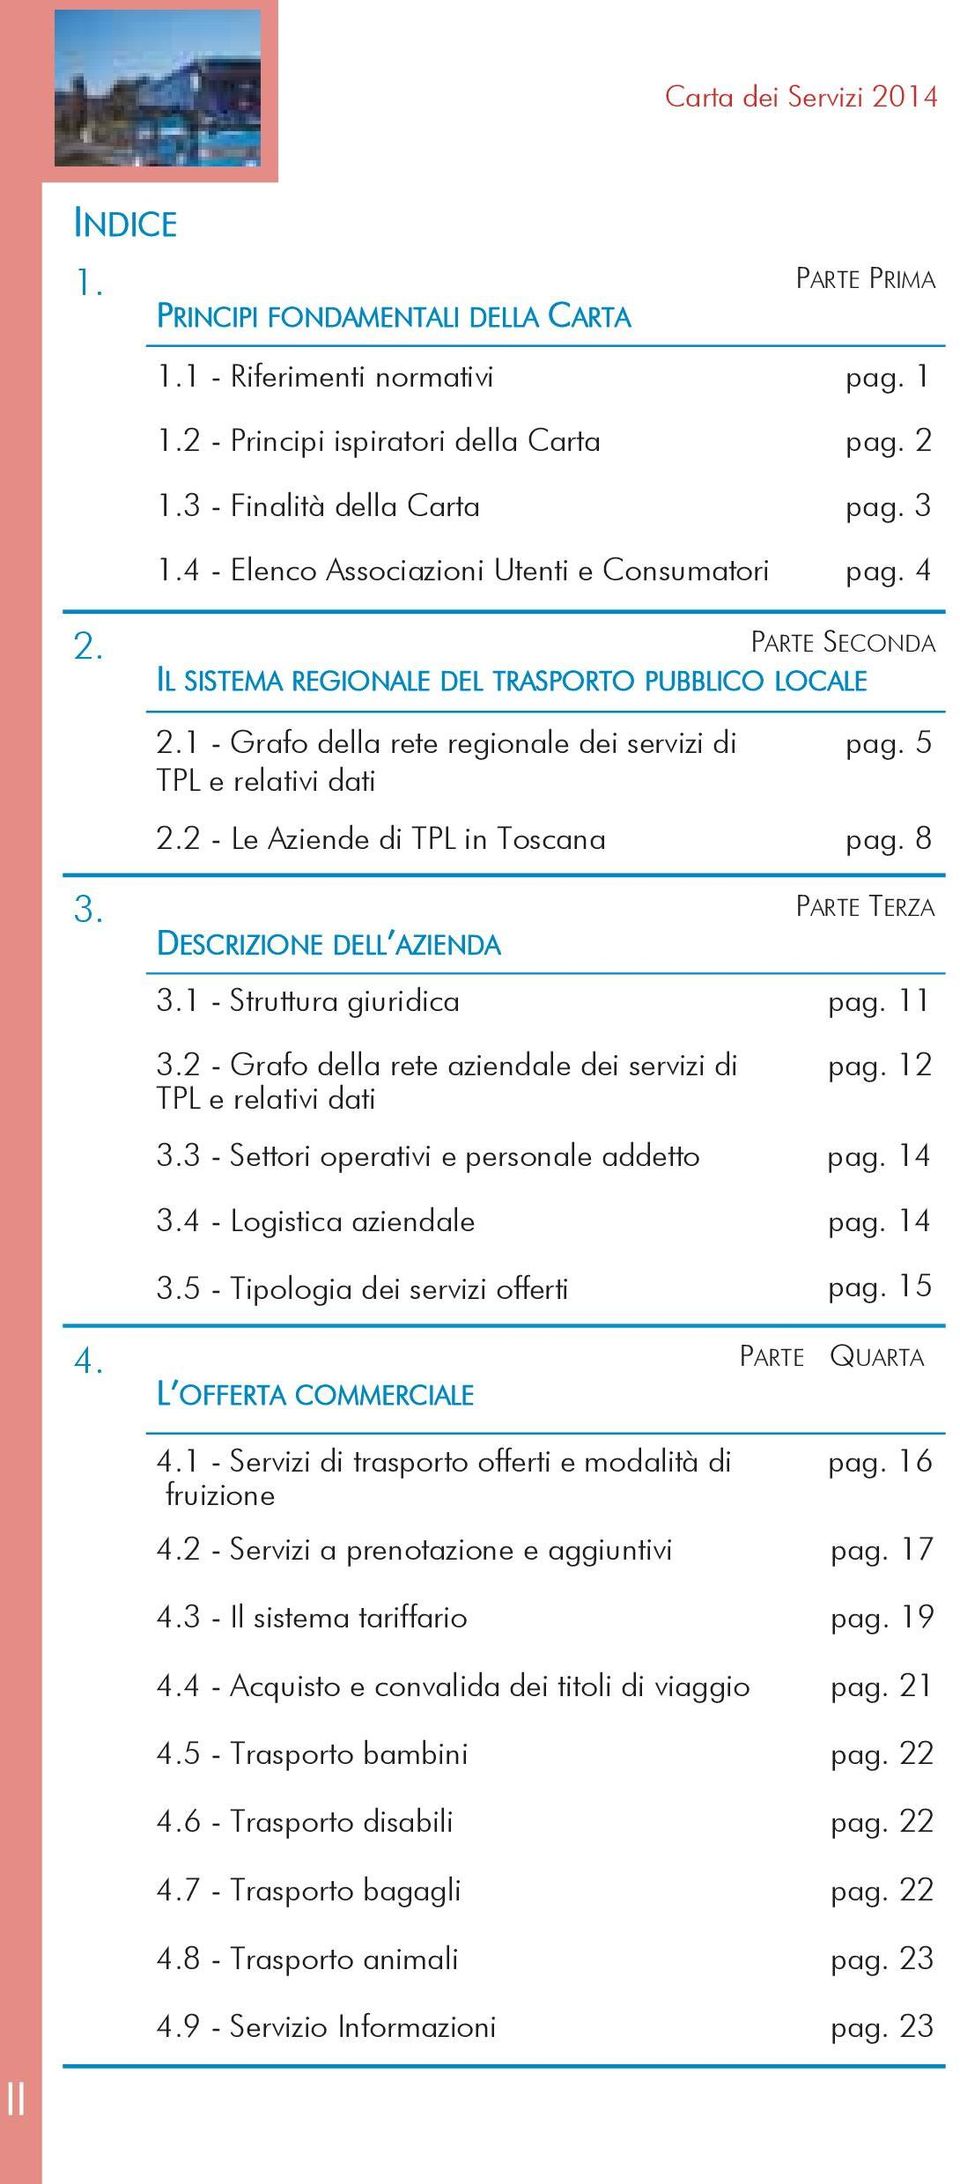 2 - Le Aziende di TPL in Toscana pag. 8 3. PARTE TERZA DESCRIZIONE DELL AZIENDA 3.1 - Struttura giuridica pag. 11 3.2 - Grafo della rete aziendale dei servizi di TPL e relativi dati pag. 12 3.